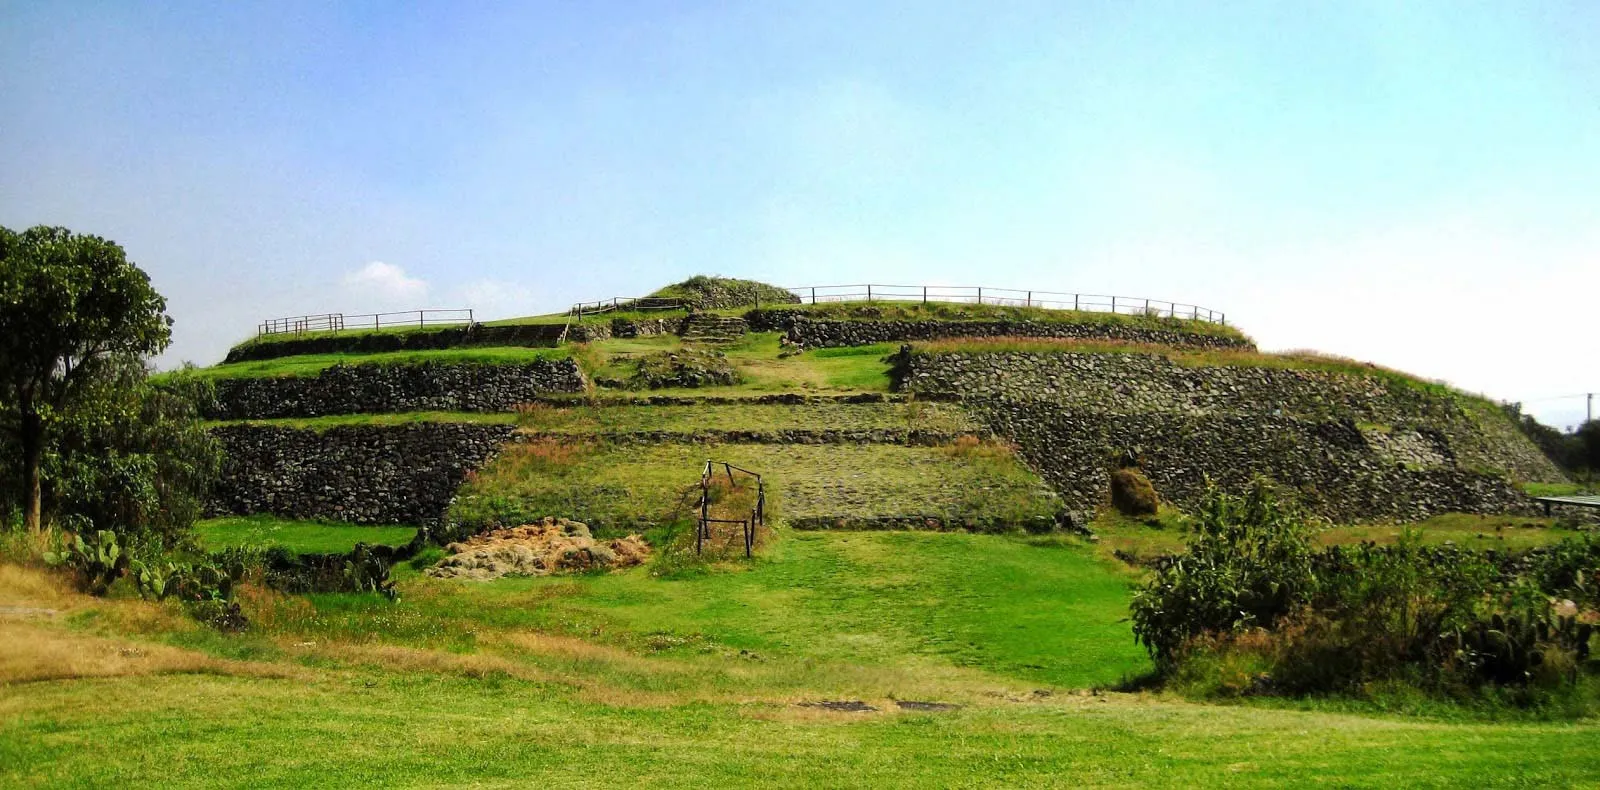 Nota sobre Cerro de la Estrella, sitio arqueológico